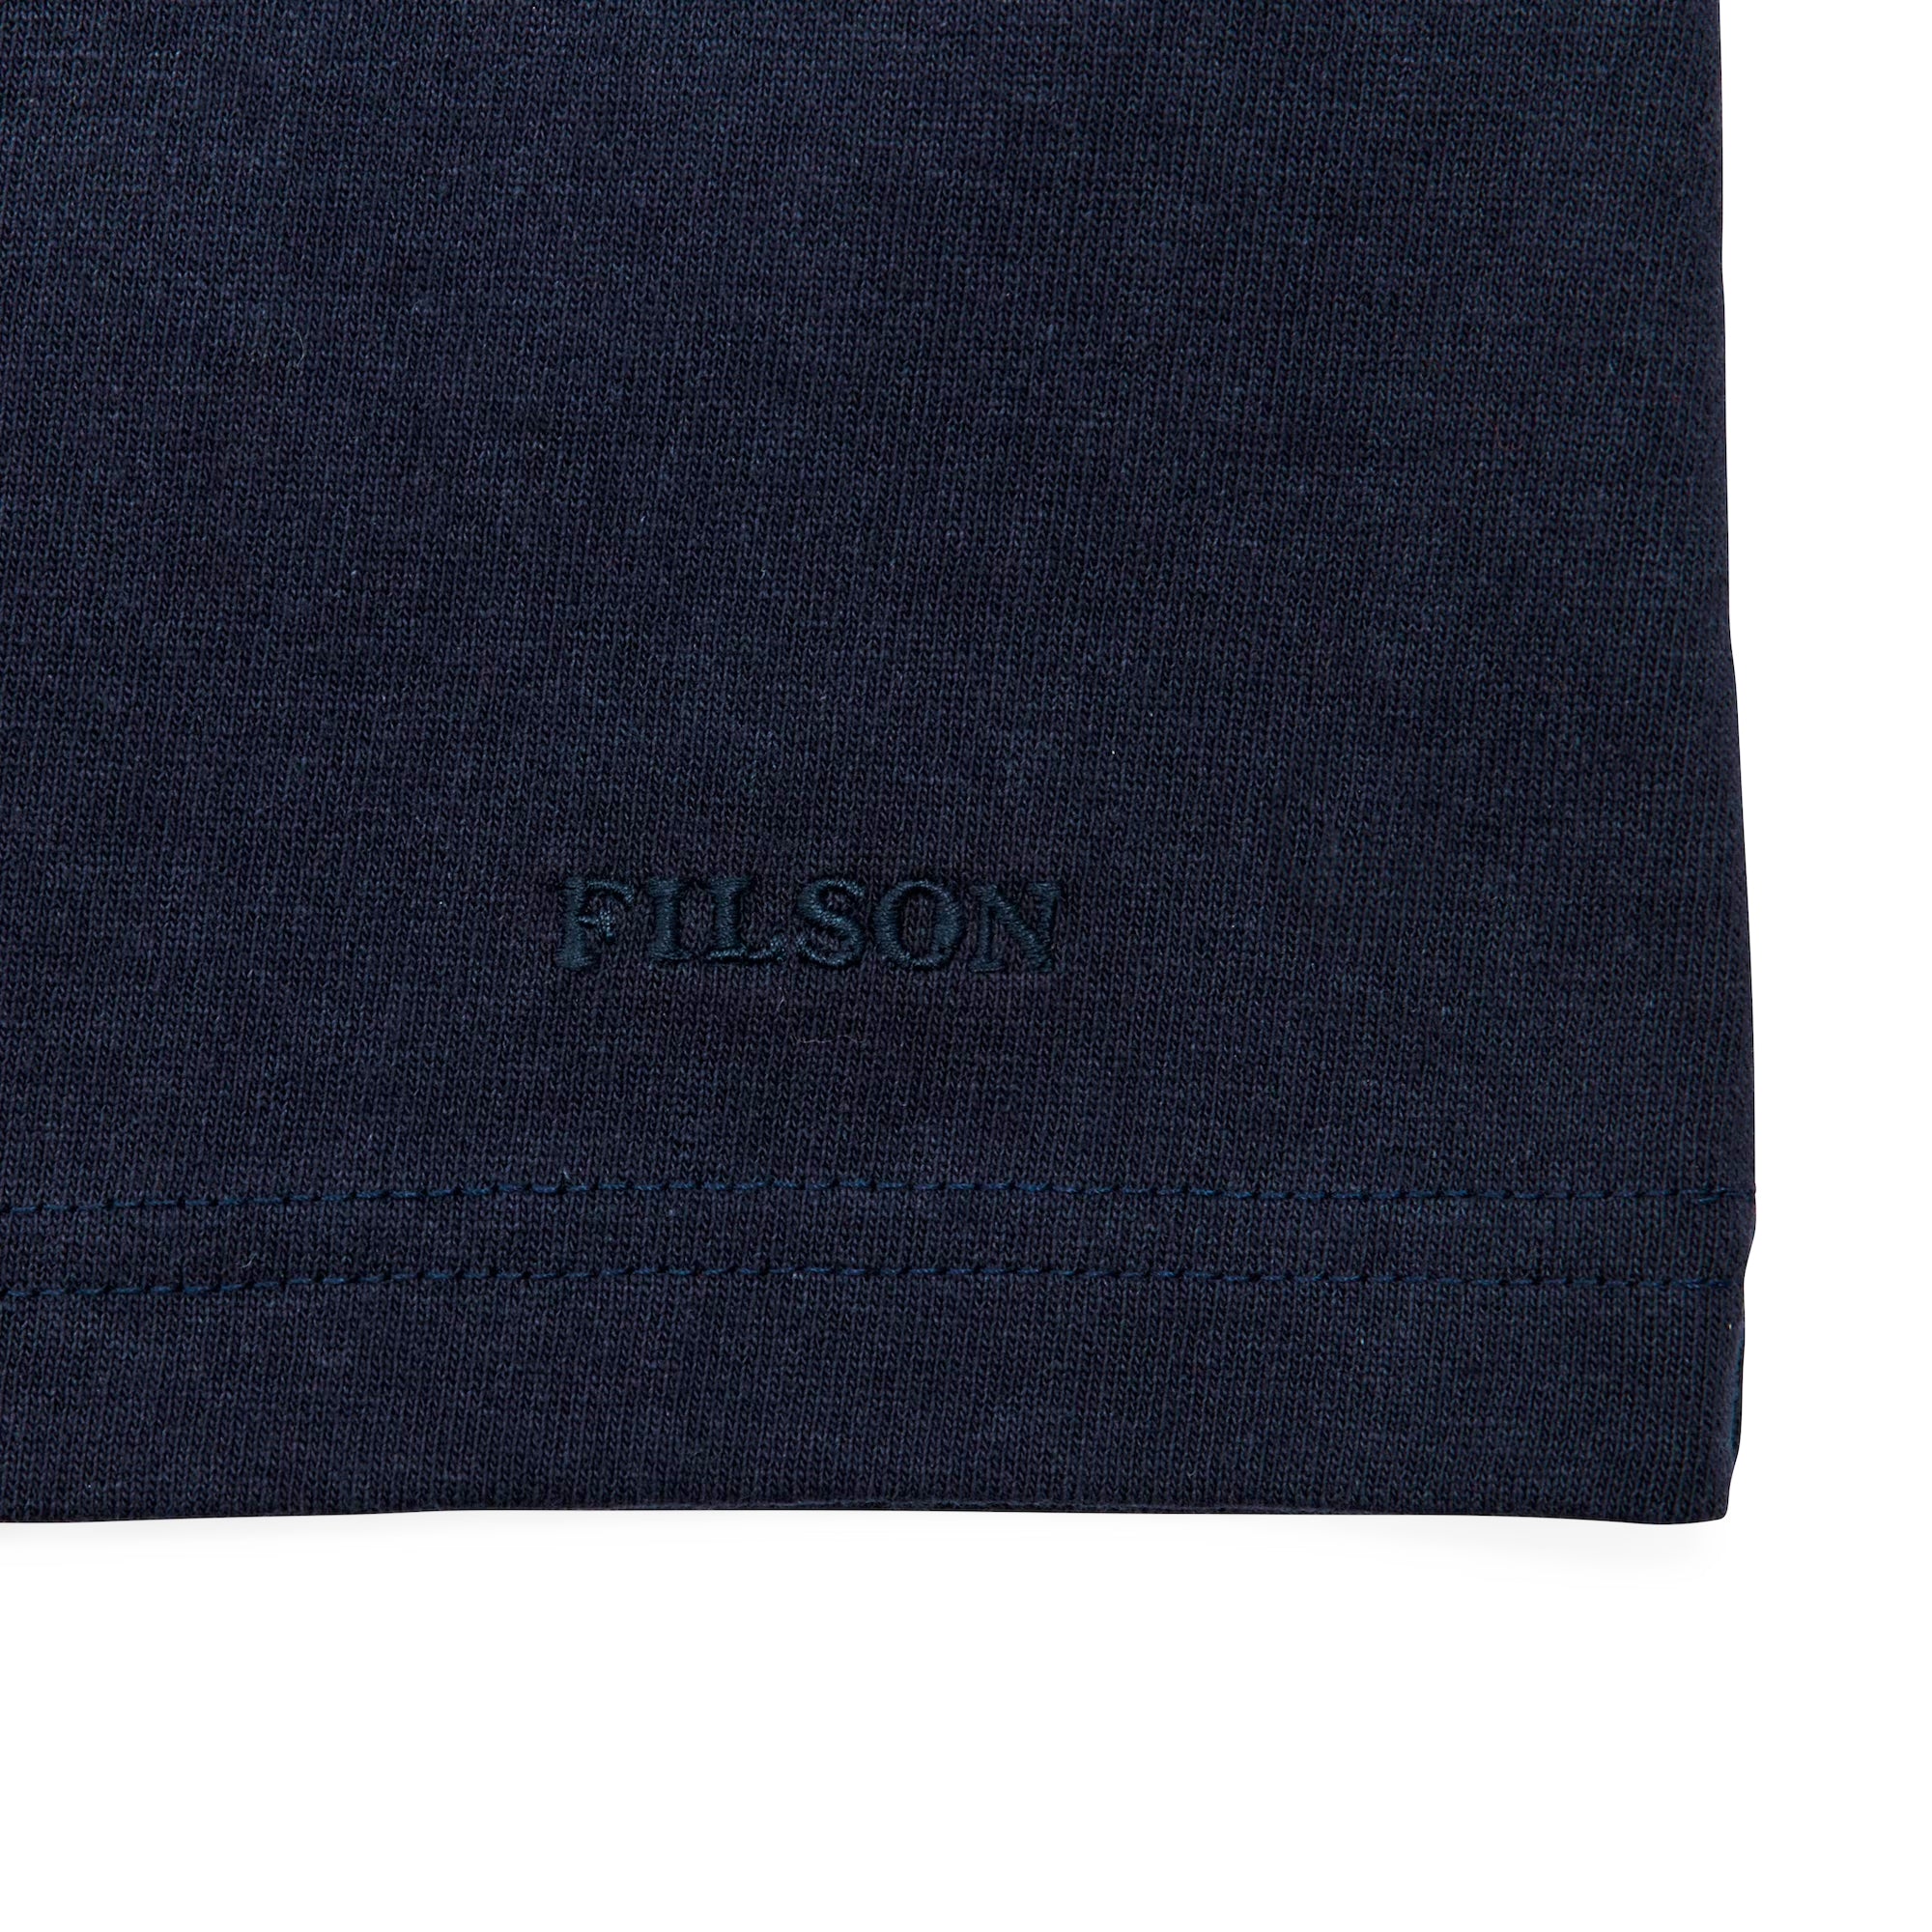 Filson Pioneer Solid One Pocket T-Shirt - Dark Navy